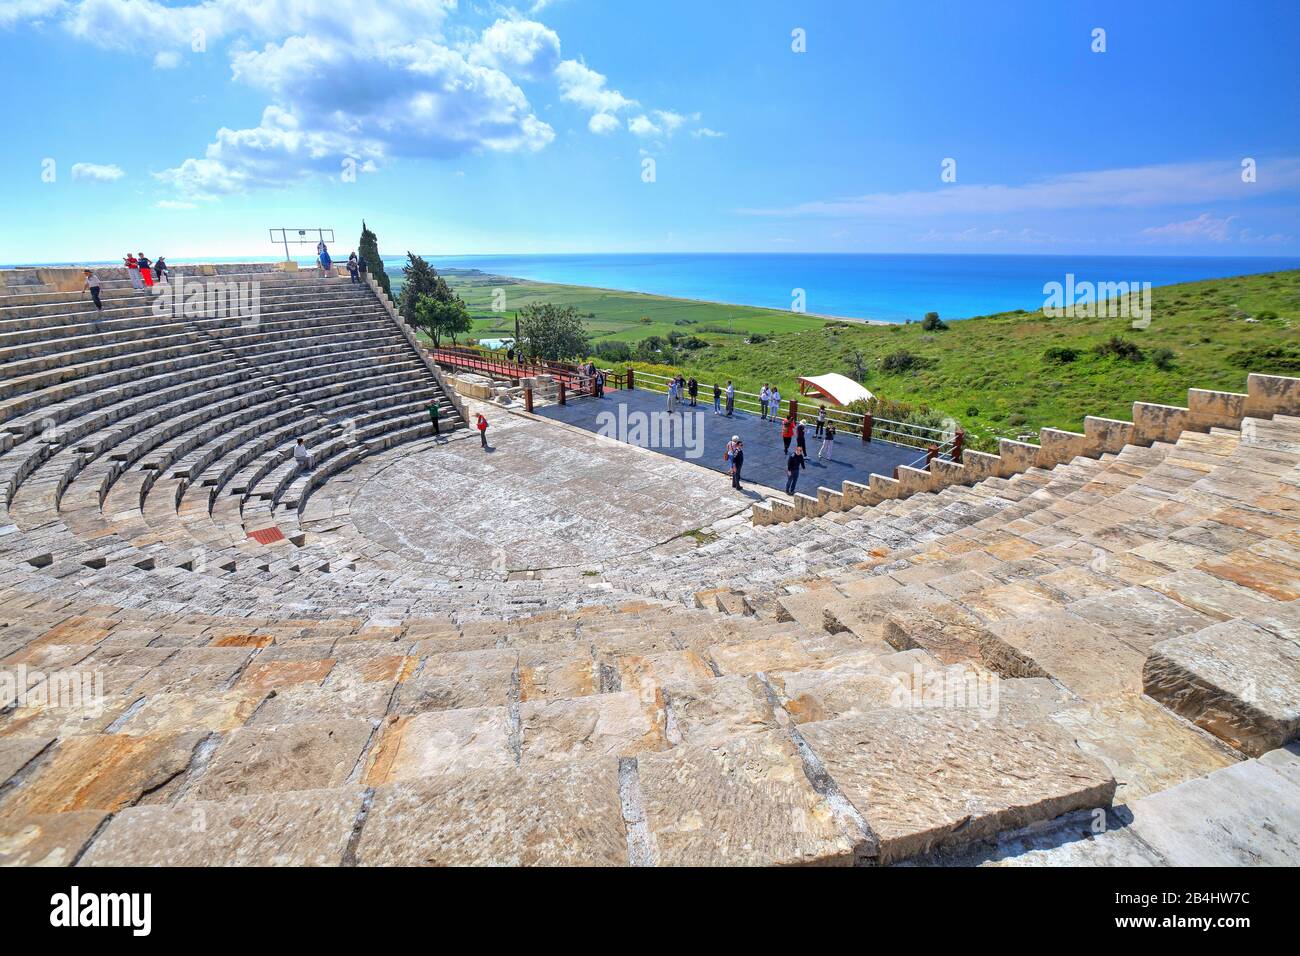 Antico teatro sulla costa mediterranea nell'antico sito archeologico di Kourion vicino a Limassol, costa mediterranea, Cipro Foto Stock